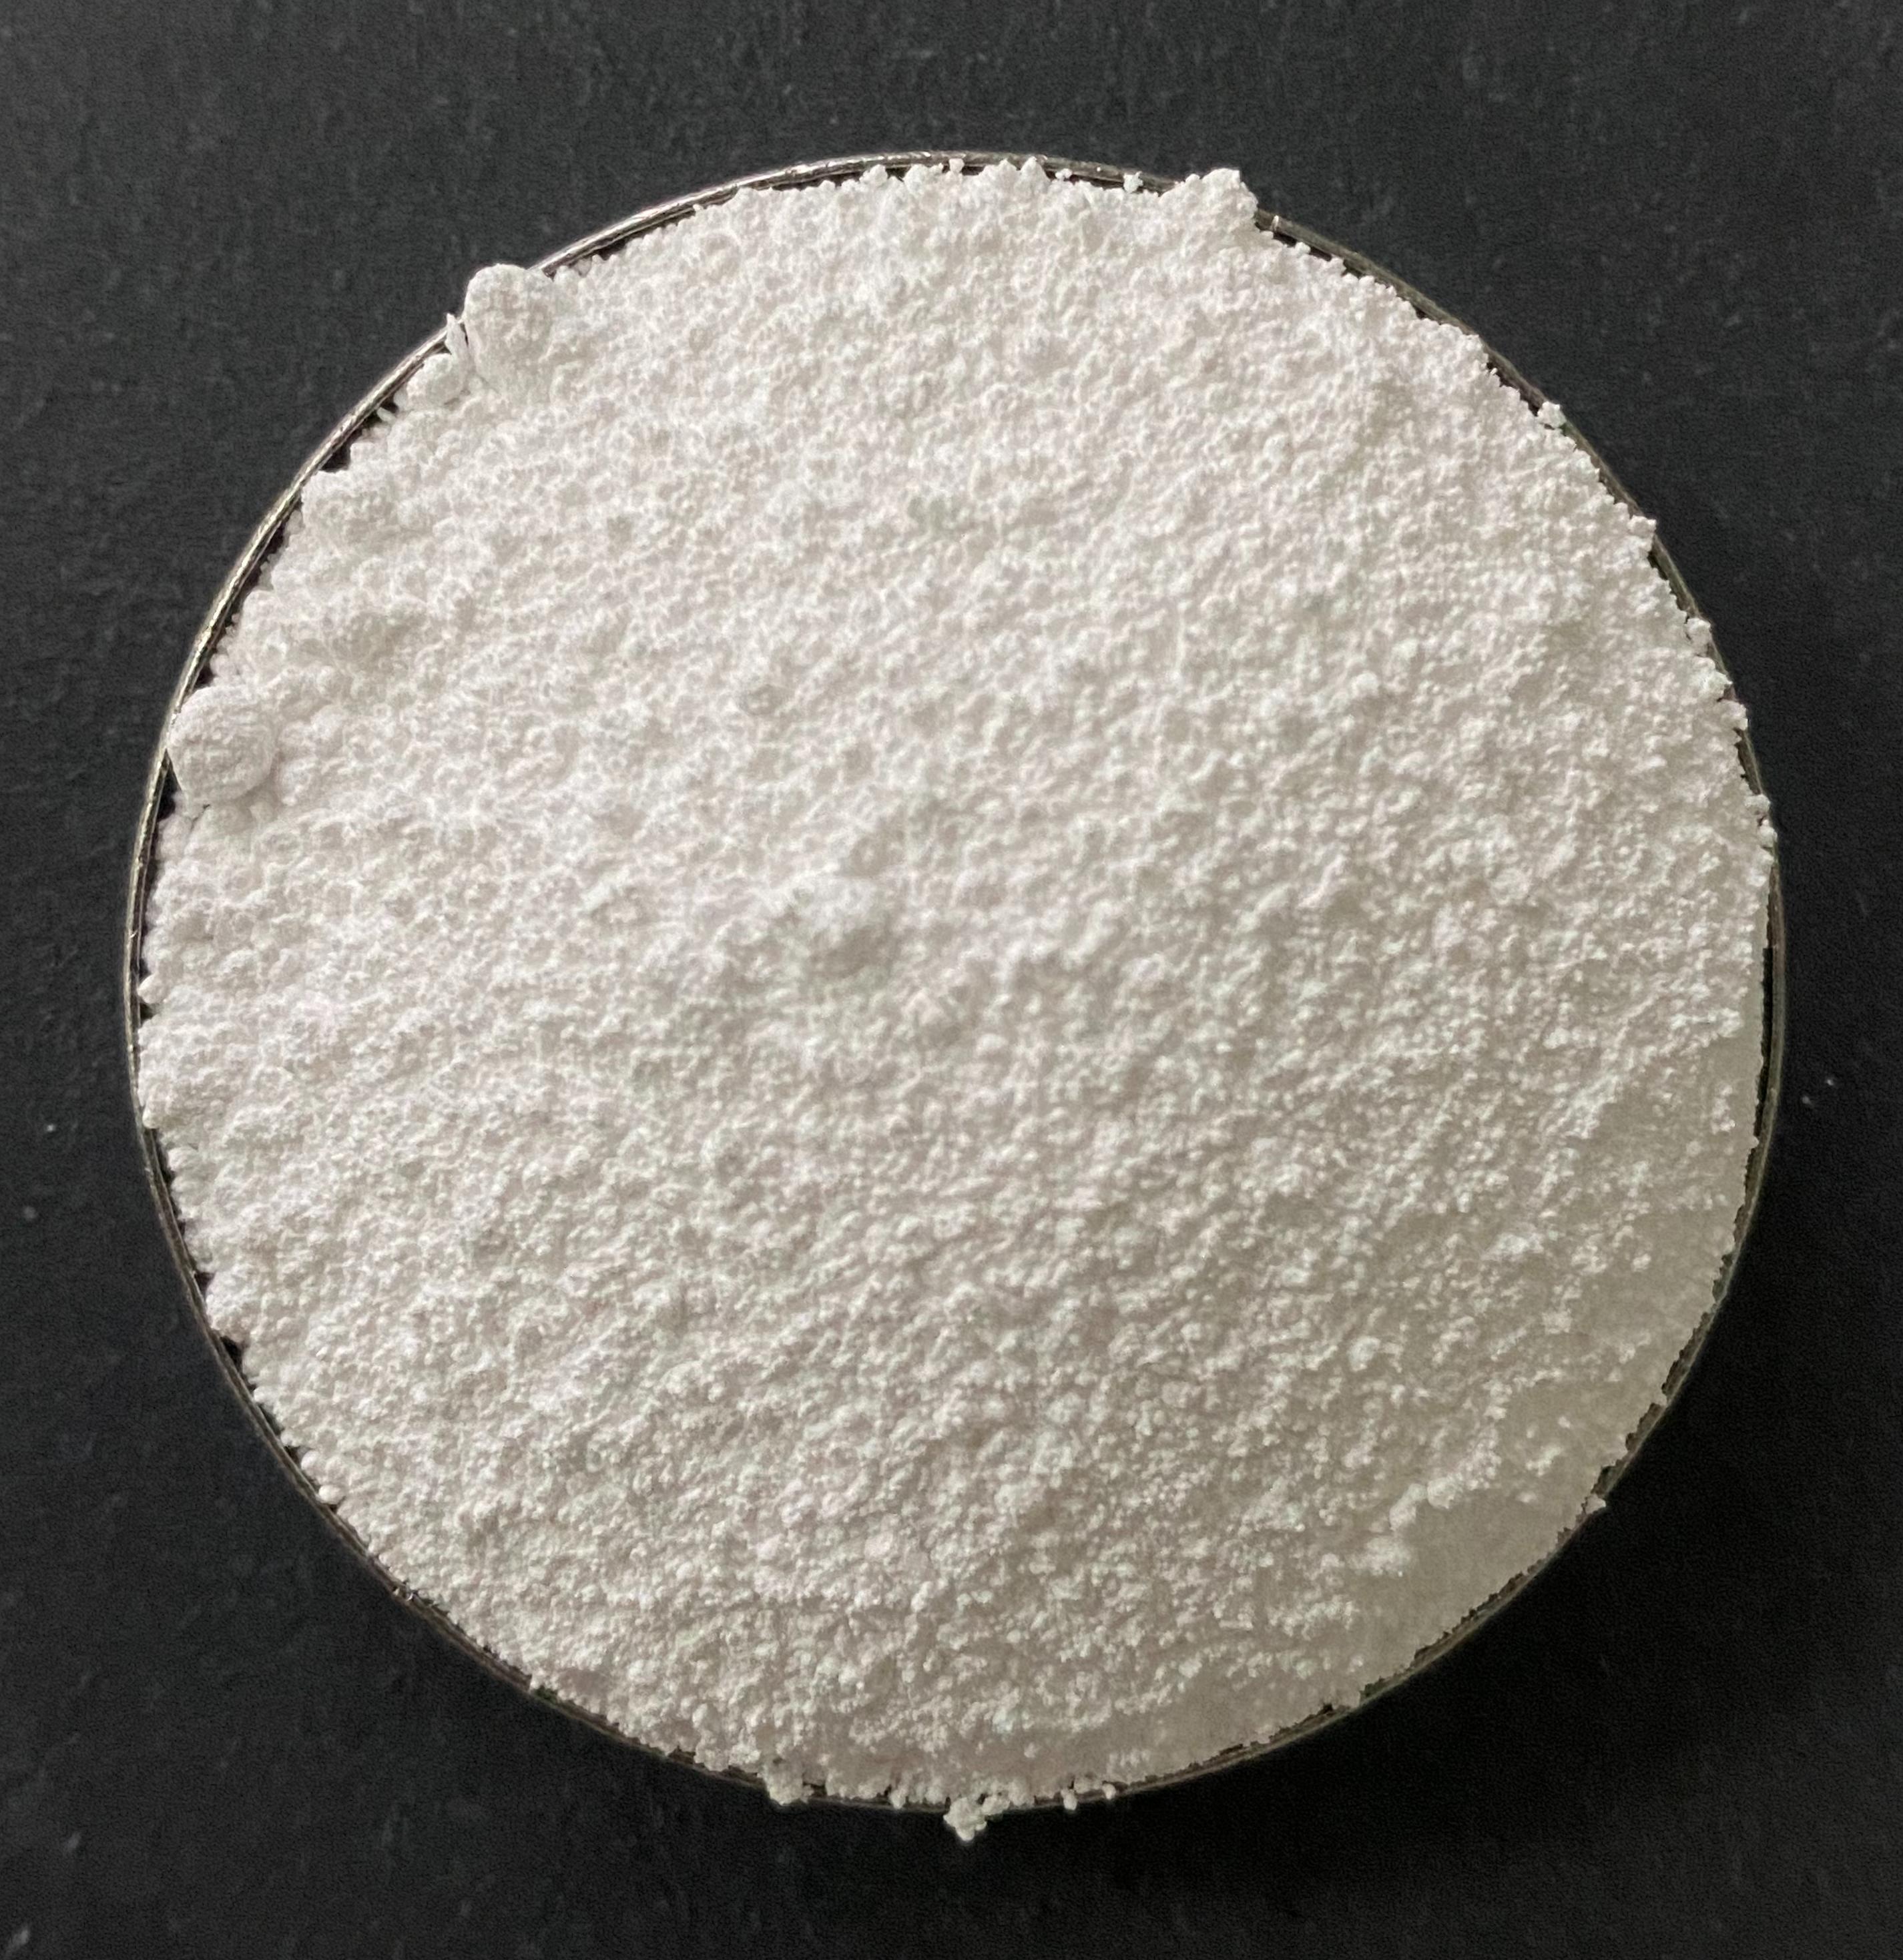 Strontium carbonate for piezoceramics TY 20.59.59-076-48591565-2020